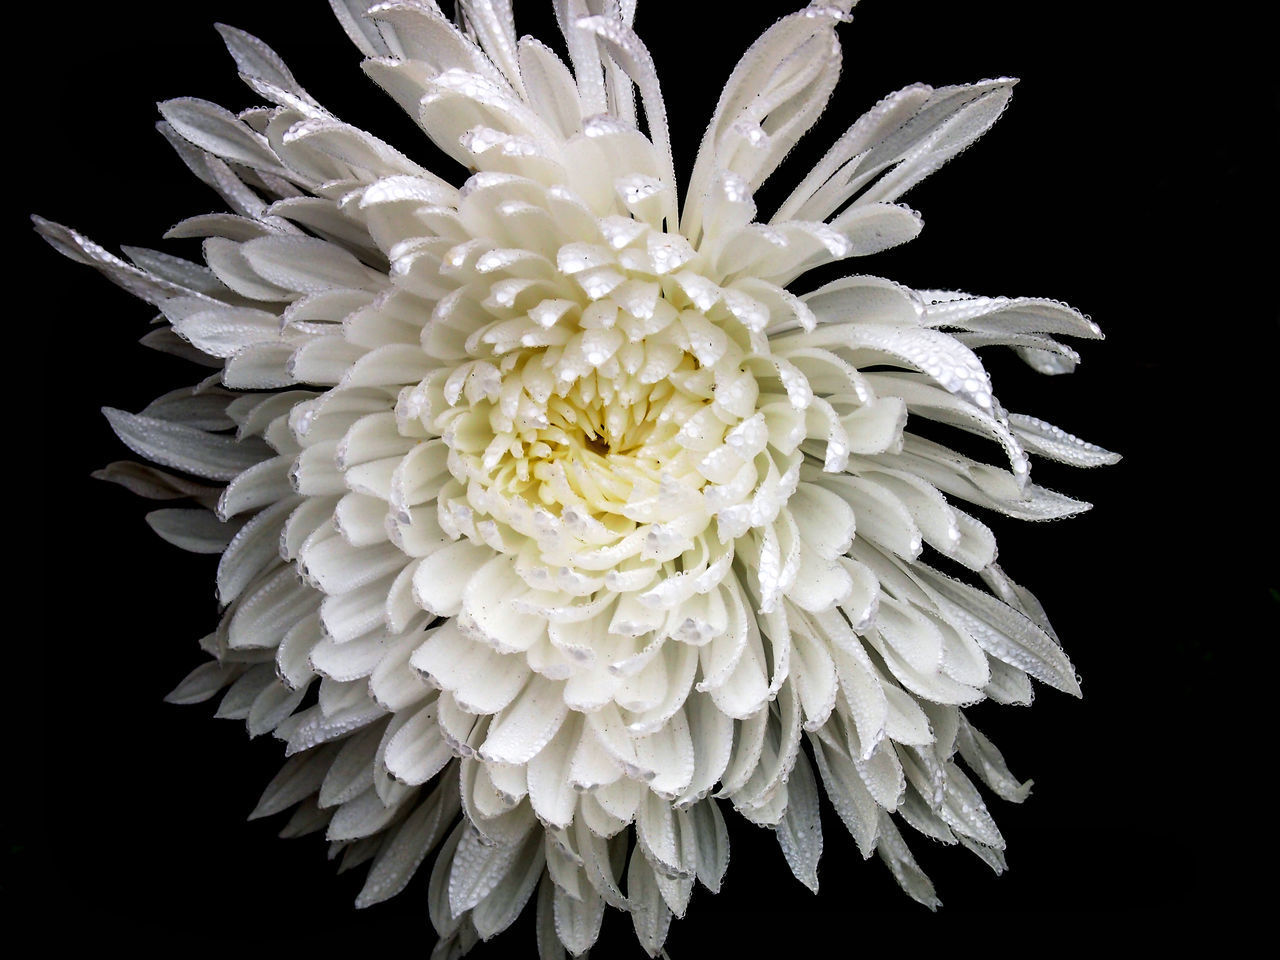 CLOSE-UP OF WHITE DAHLIA FLOWER